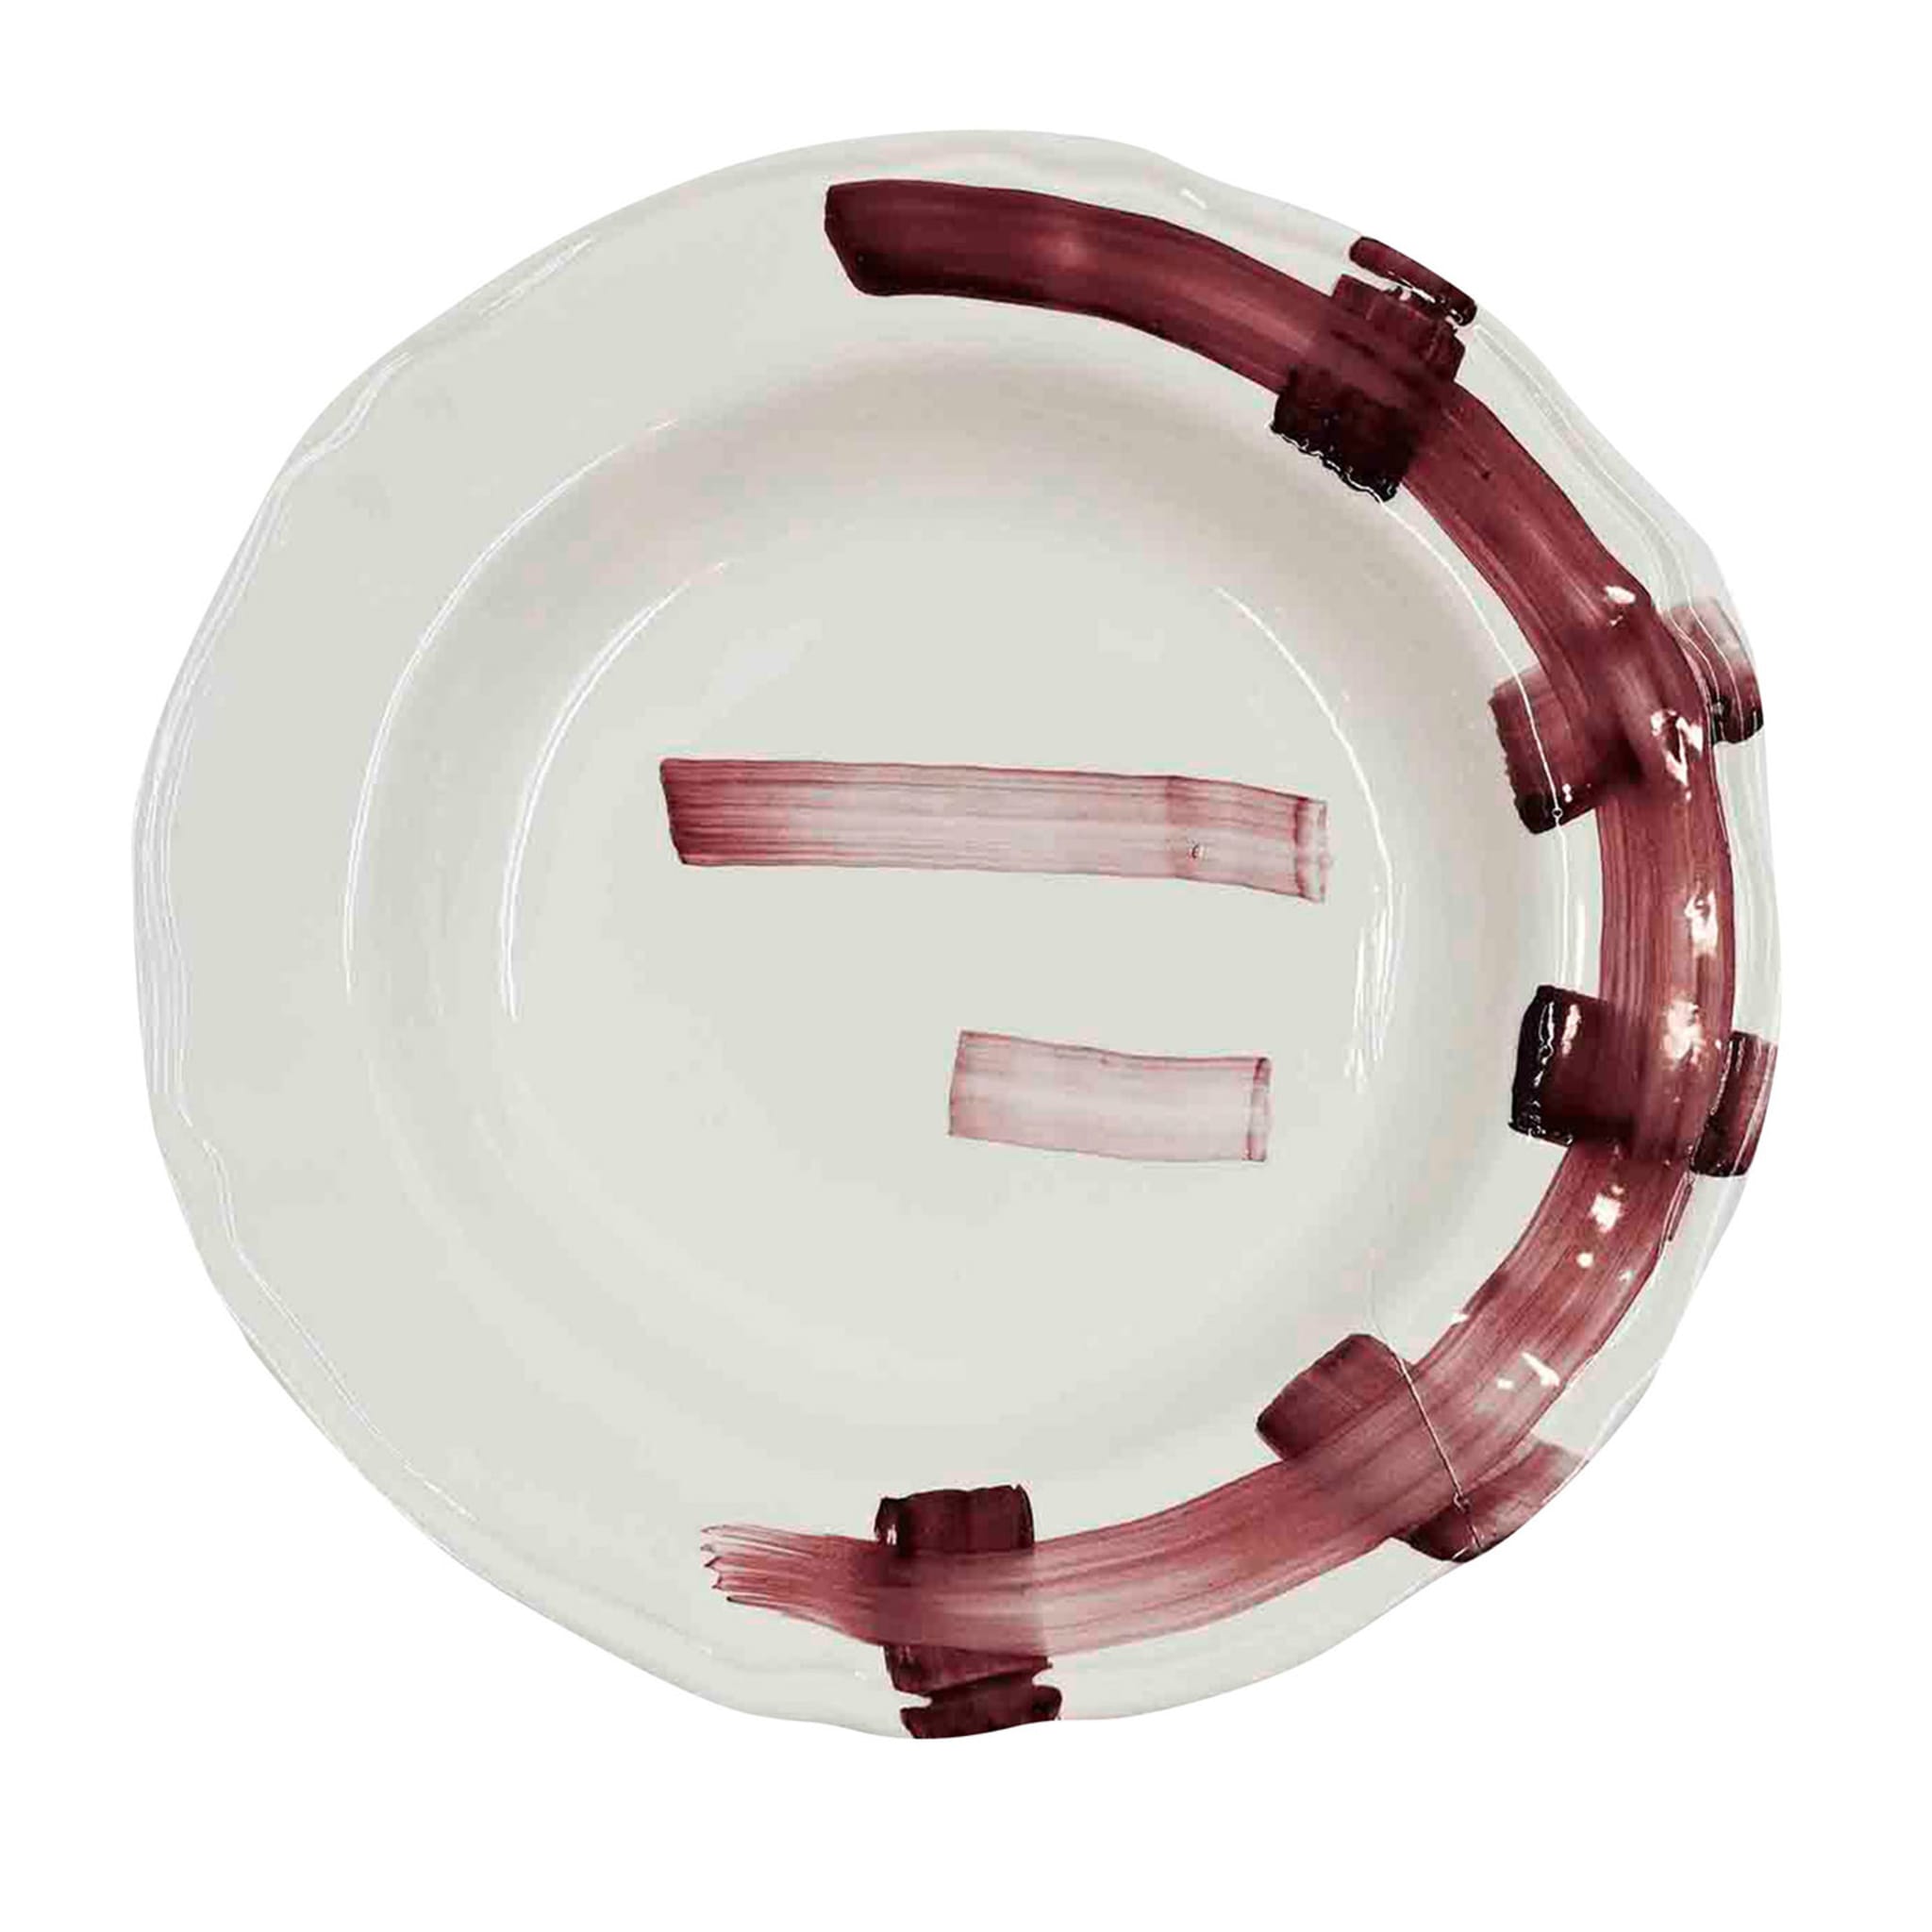 Italian Artisan Ceramic Premium Plate